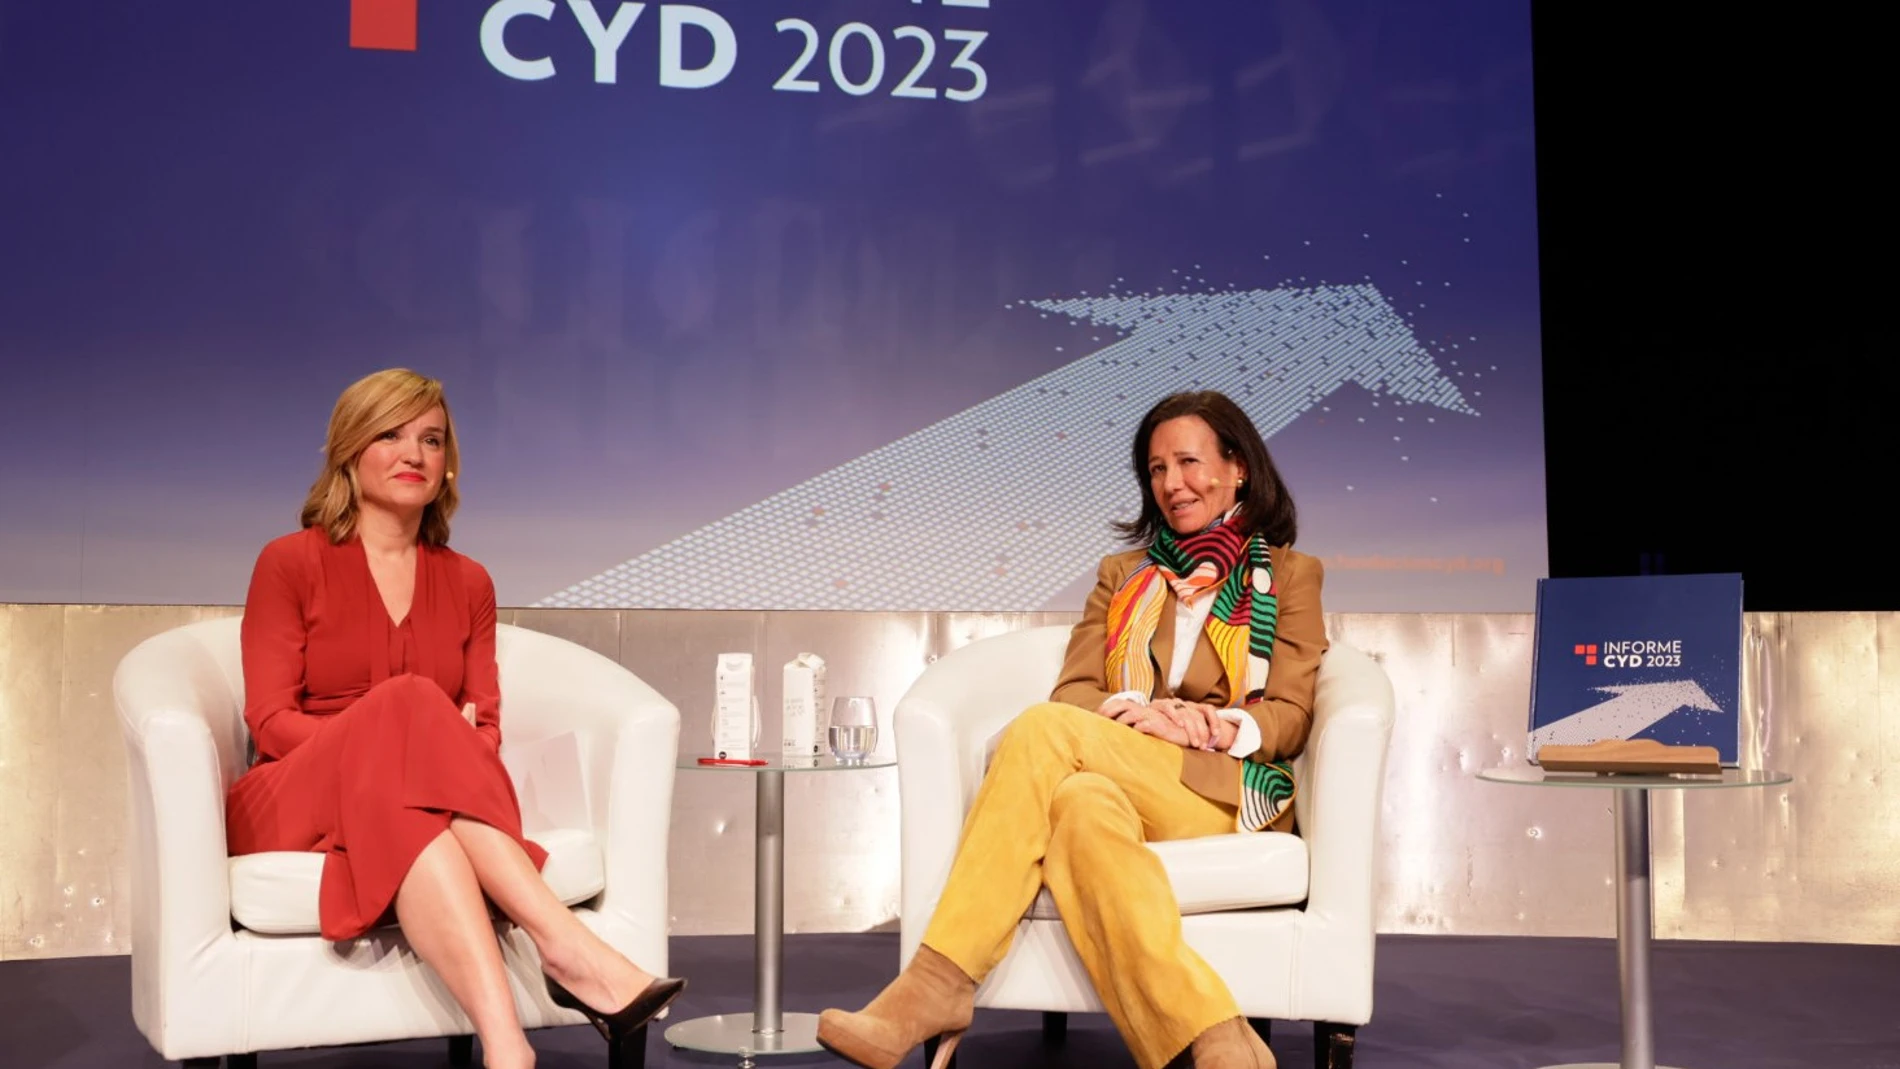 La ministra de Educación, Pilar Alegría, con la presidenta de Banco Santander y la Fundación CYD, Ana Botín